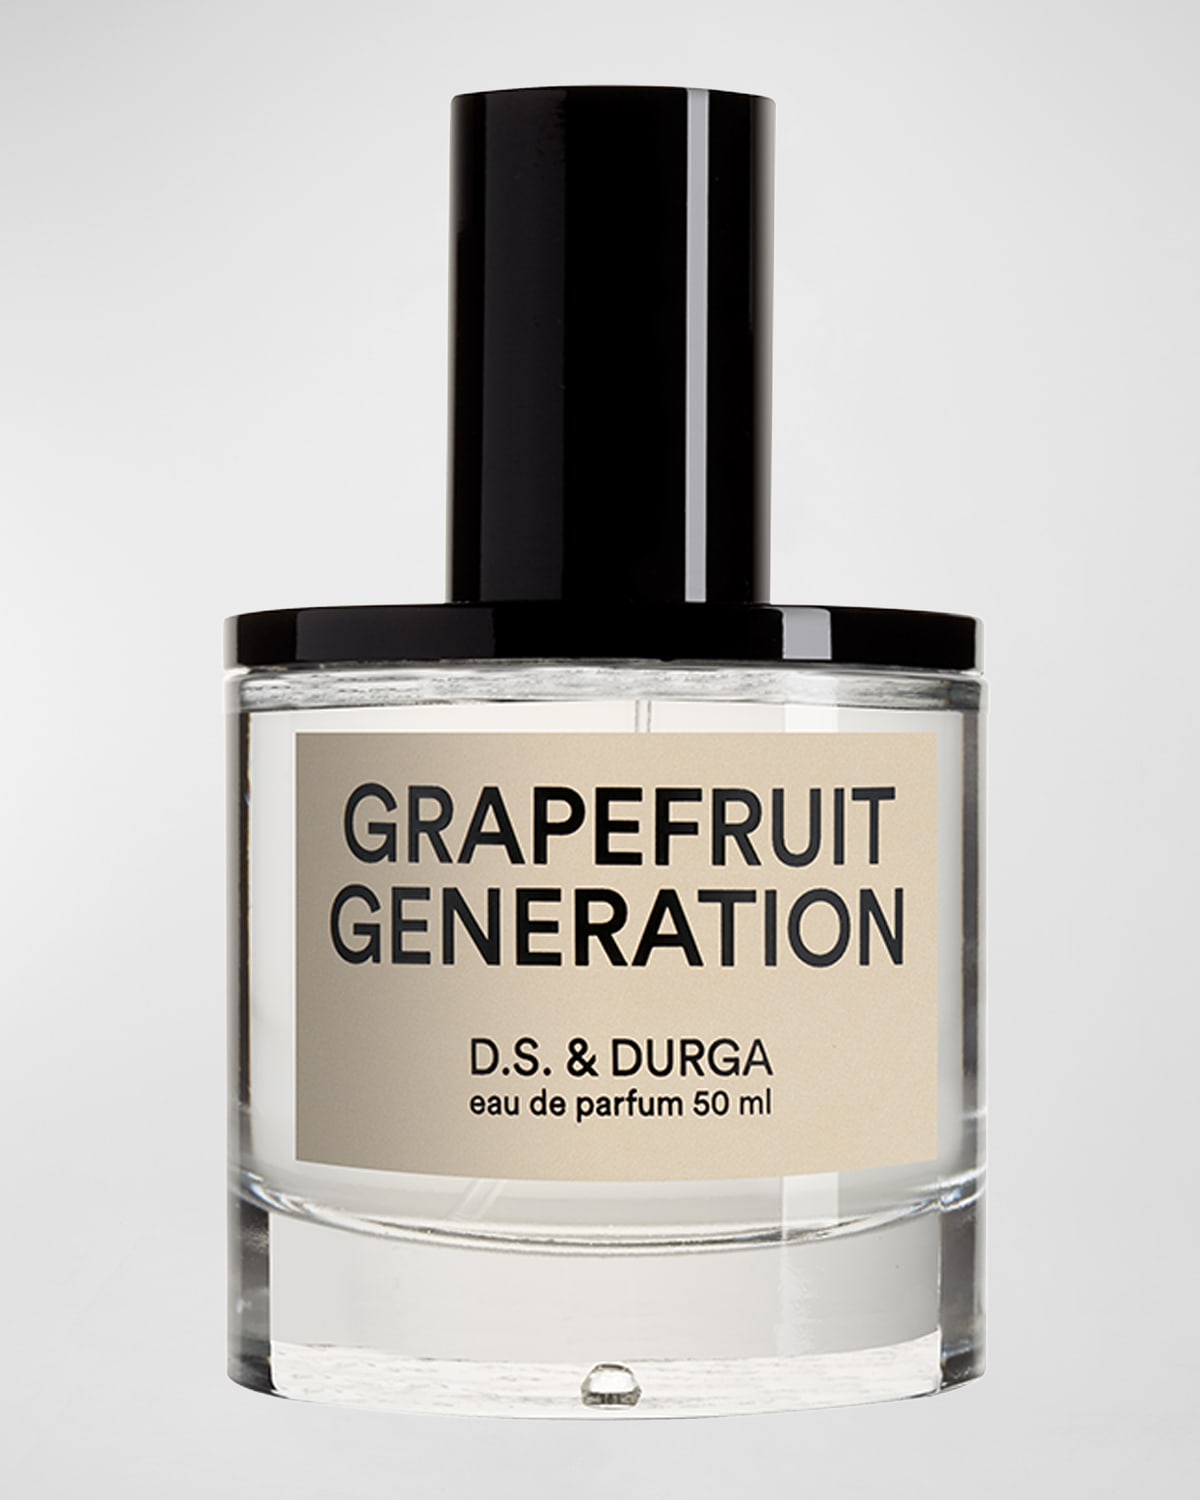 D.S. & DURGA Grapefruit Generation Eau de Parfum, 1.7 oz.